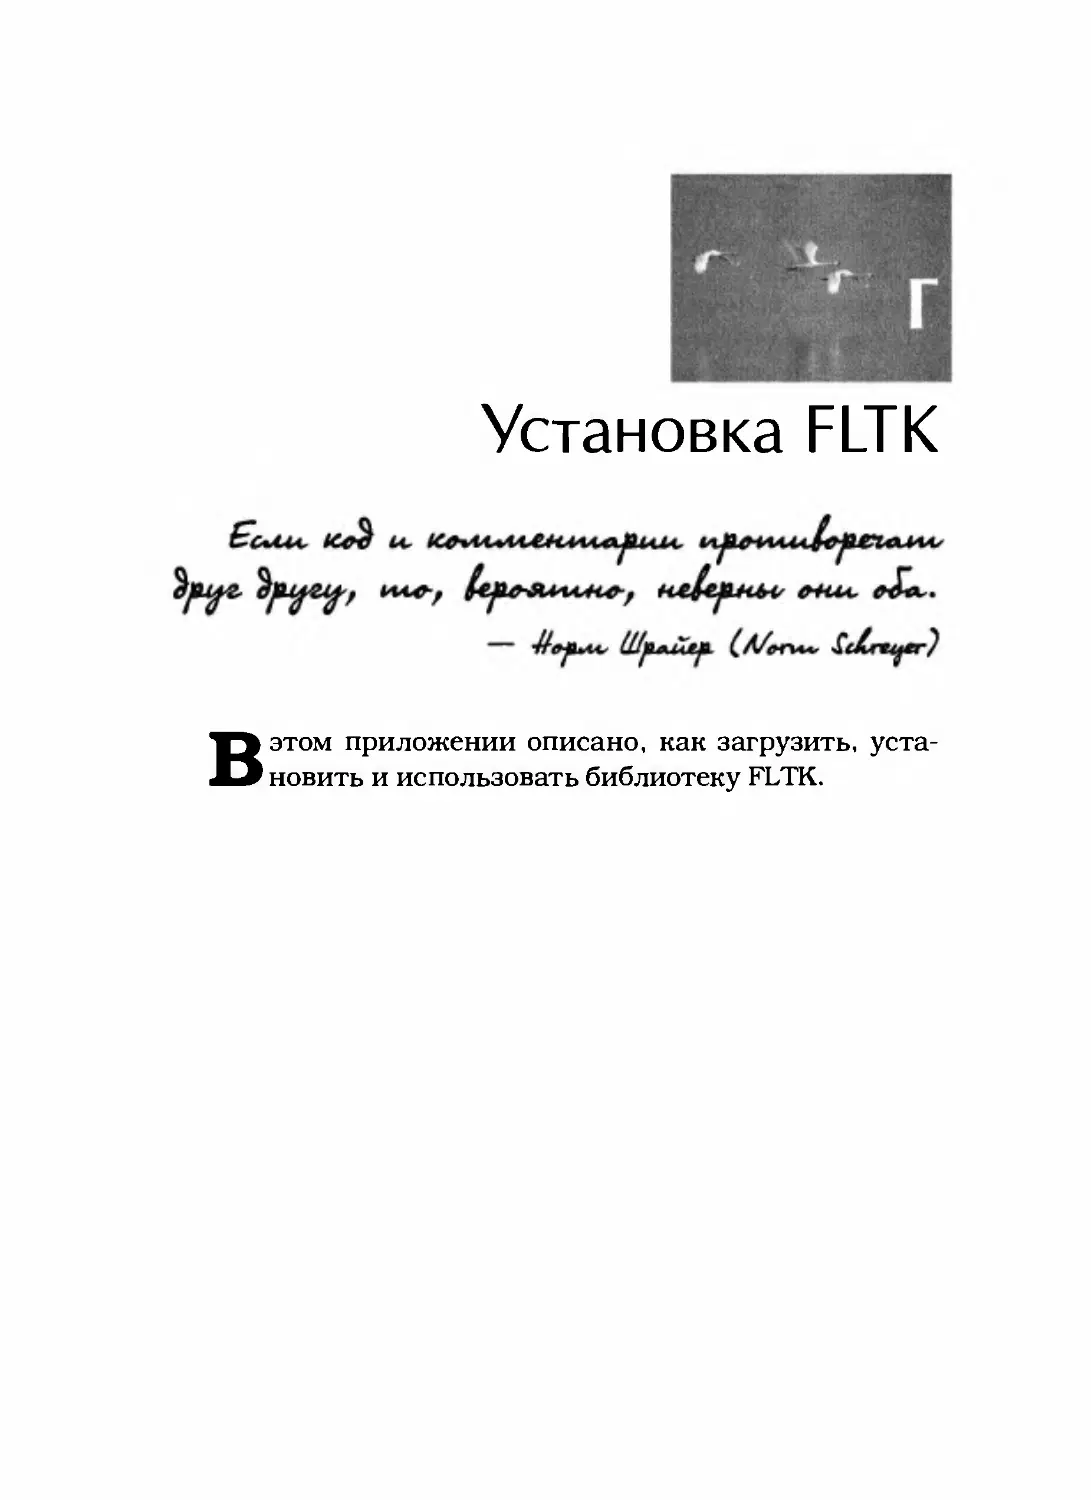 Приложение Г. Установка FLTK